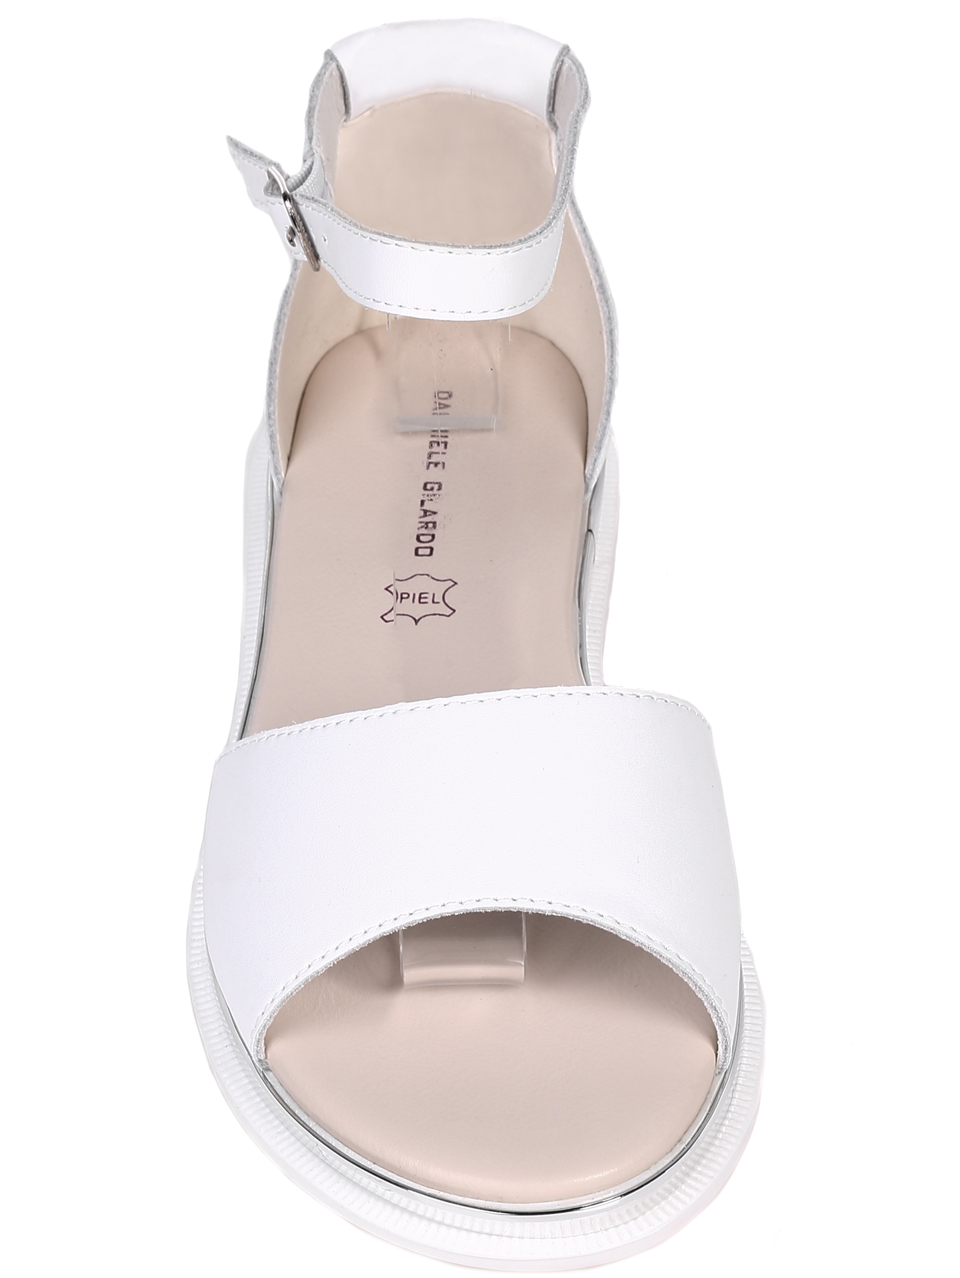 Ежедневни дамски равни сандали от естествена кожа в бяло 4AF-22191 white